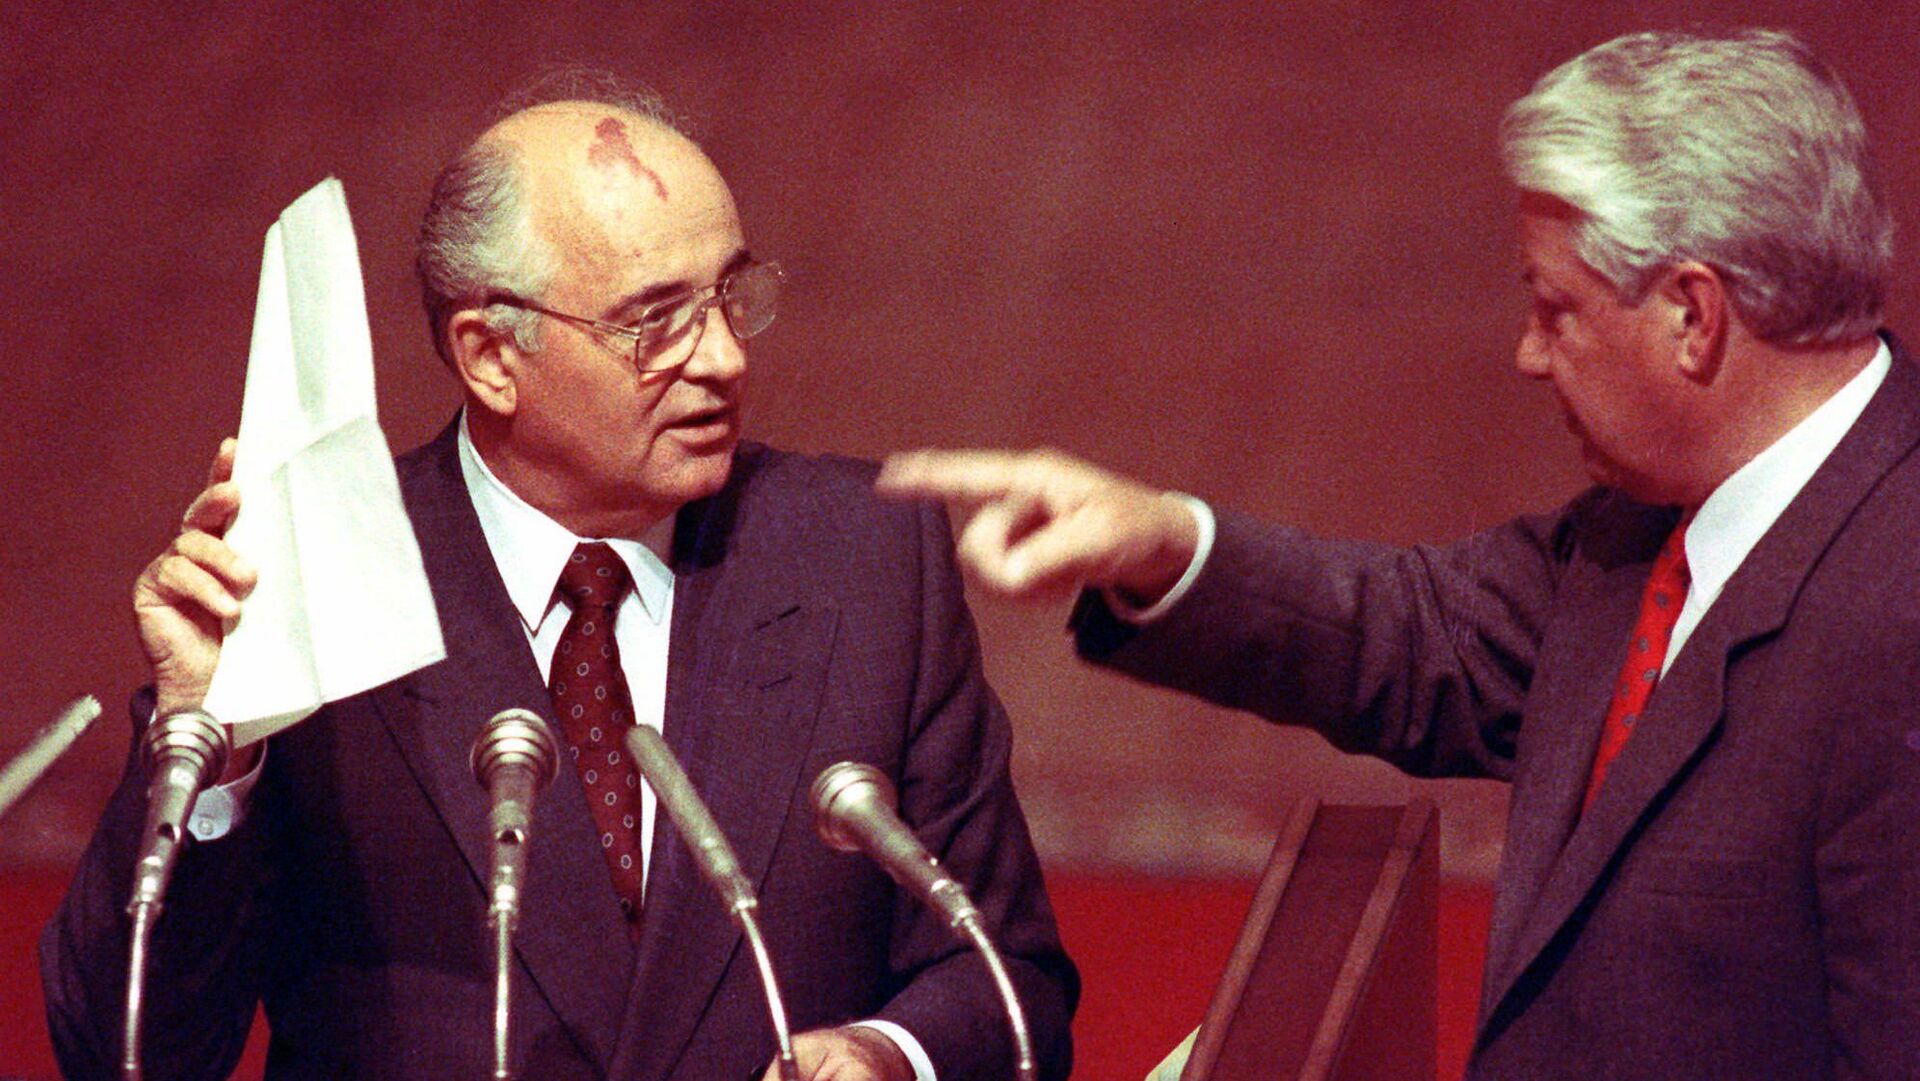 TSRS prezidentas Michailas Gorbačiovas laiko Rusijos Federacijos prezidento Boriso Jelcino jam įteiktus stenografinius užrašus, 1991.08.23 - Sputnik Lietuva, 1920, 05.12.2021